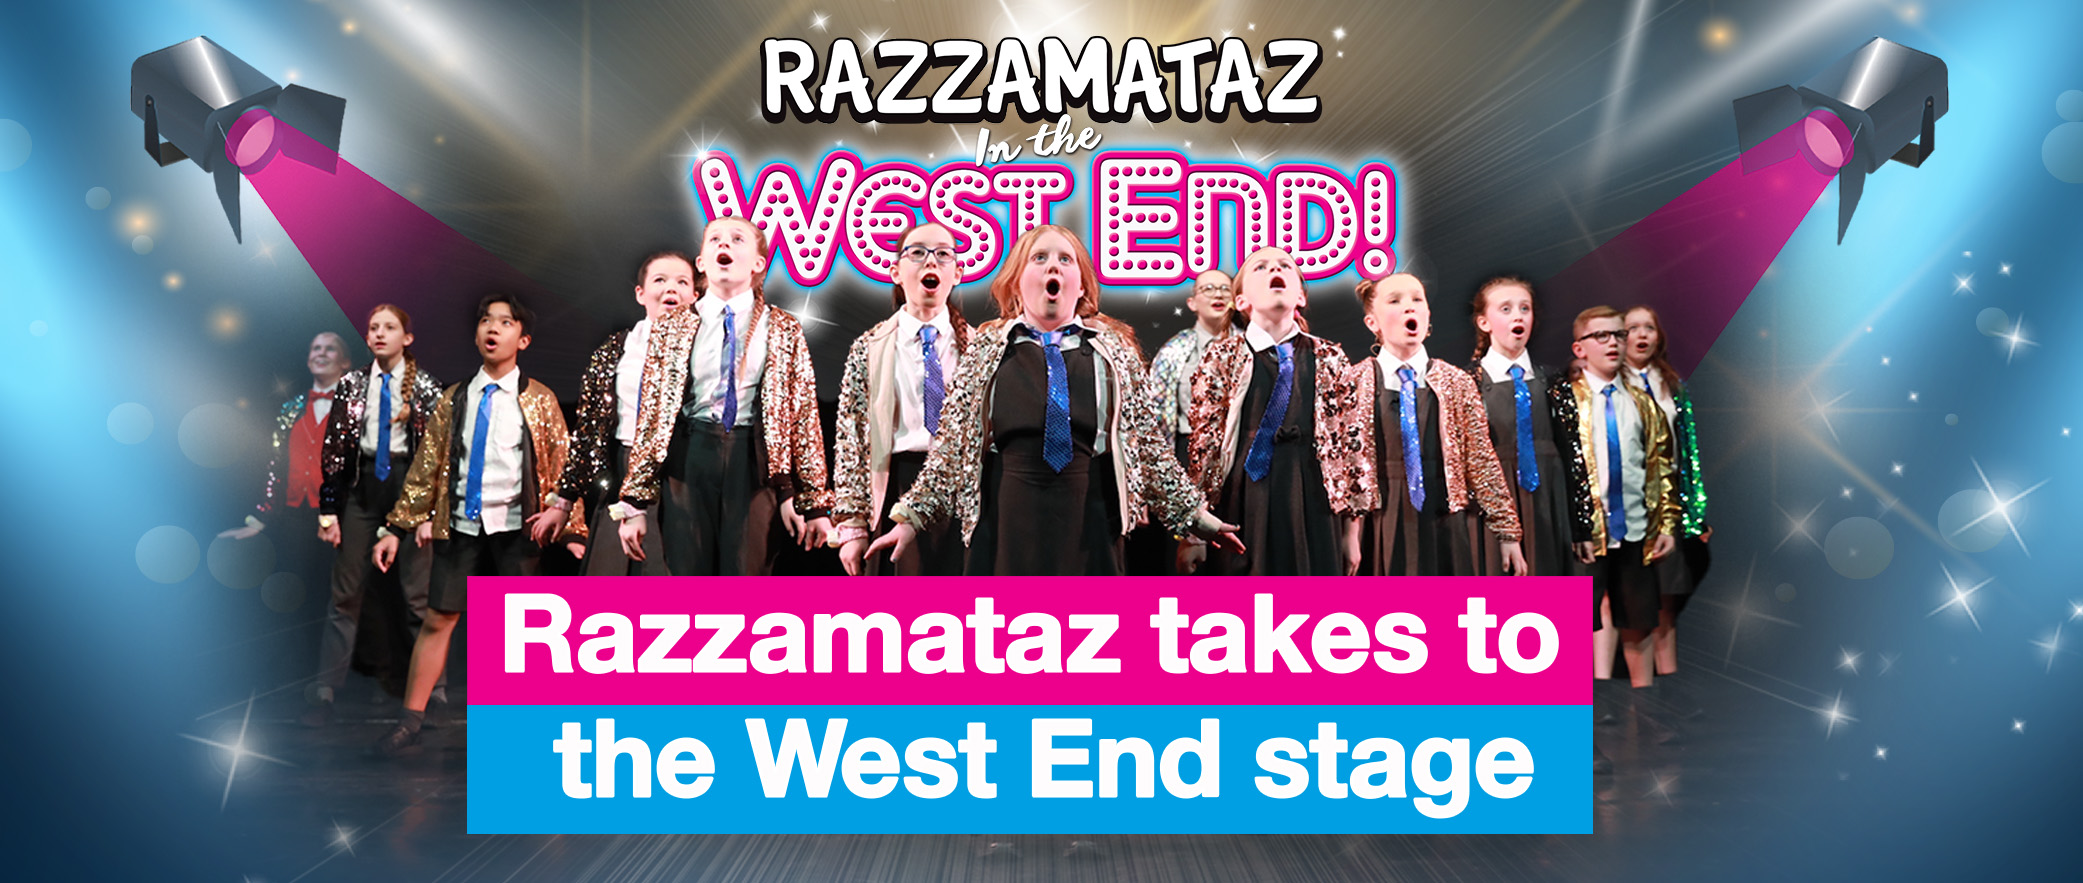 Razzamataz takes to the West End stage